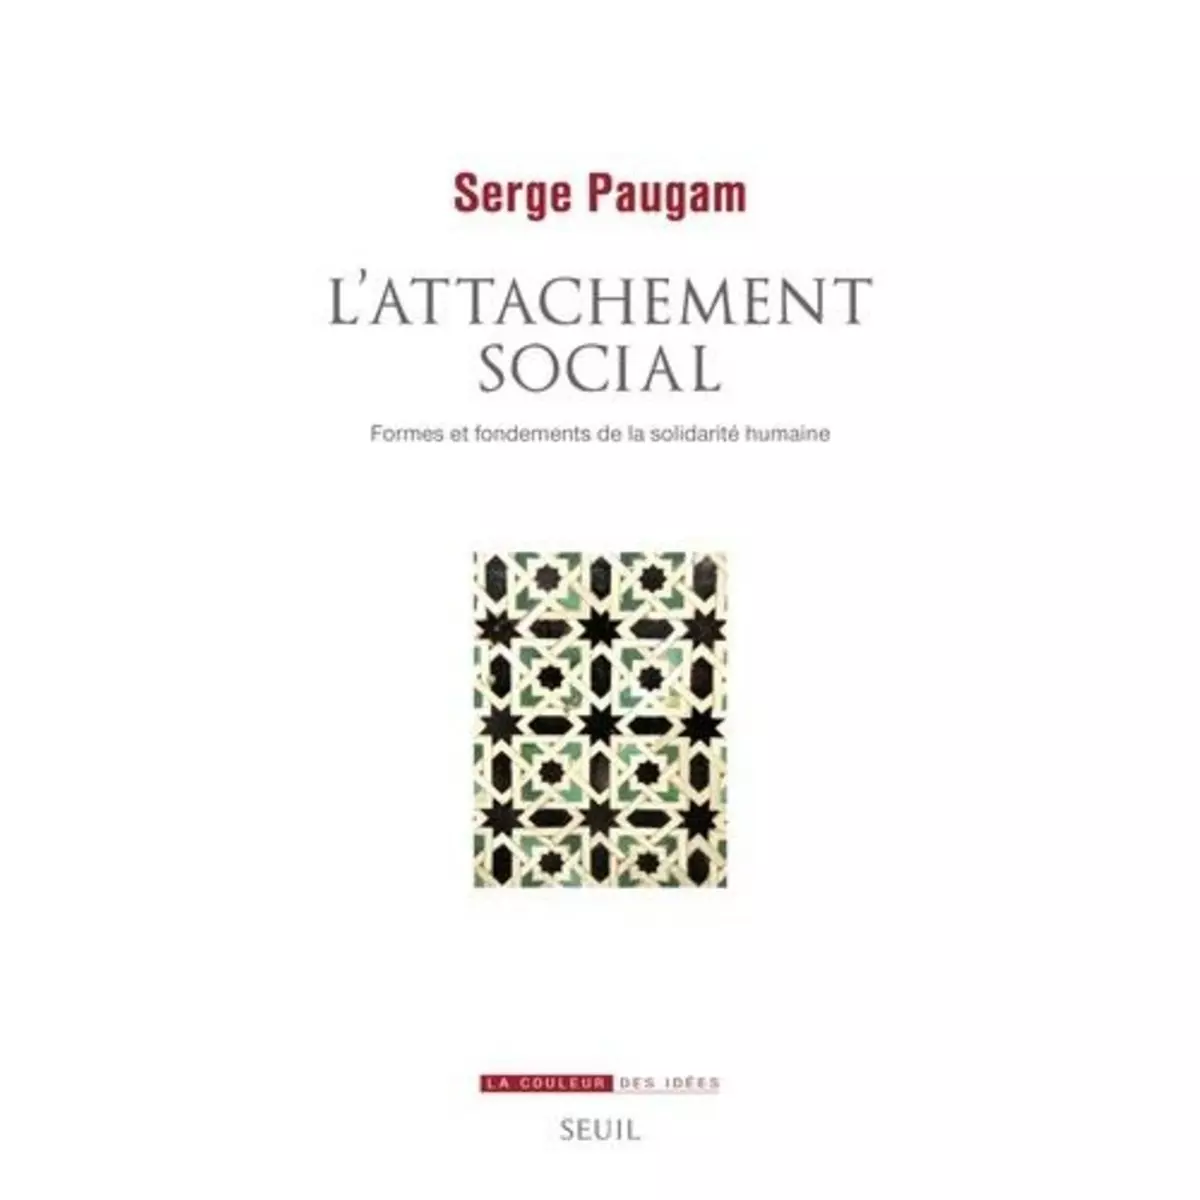  L'ATTACHEMENT SOCIAL. FORMES ET FONDEMENTS DE LA SOLIDARITE HUMAINE, Paugam Serge